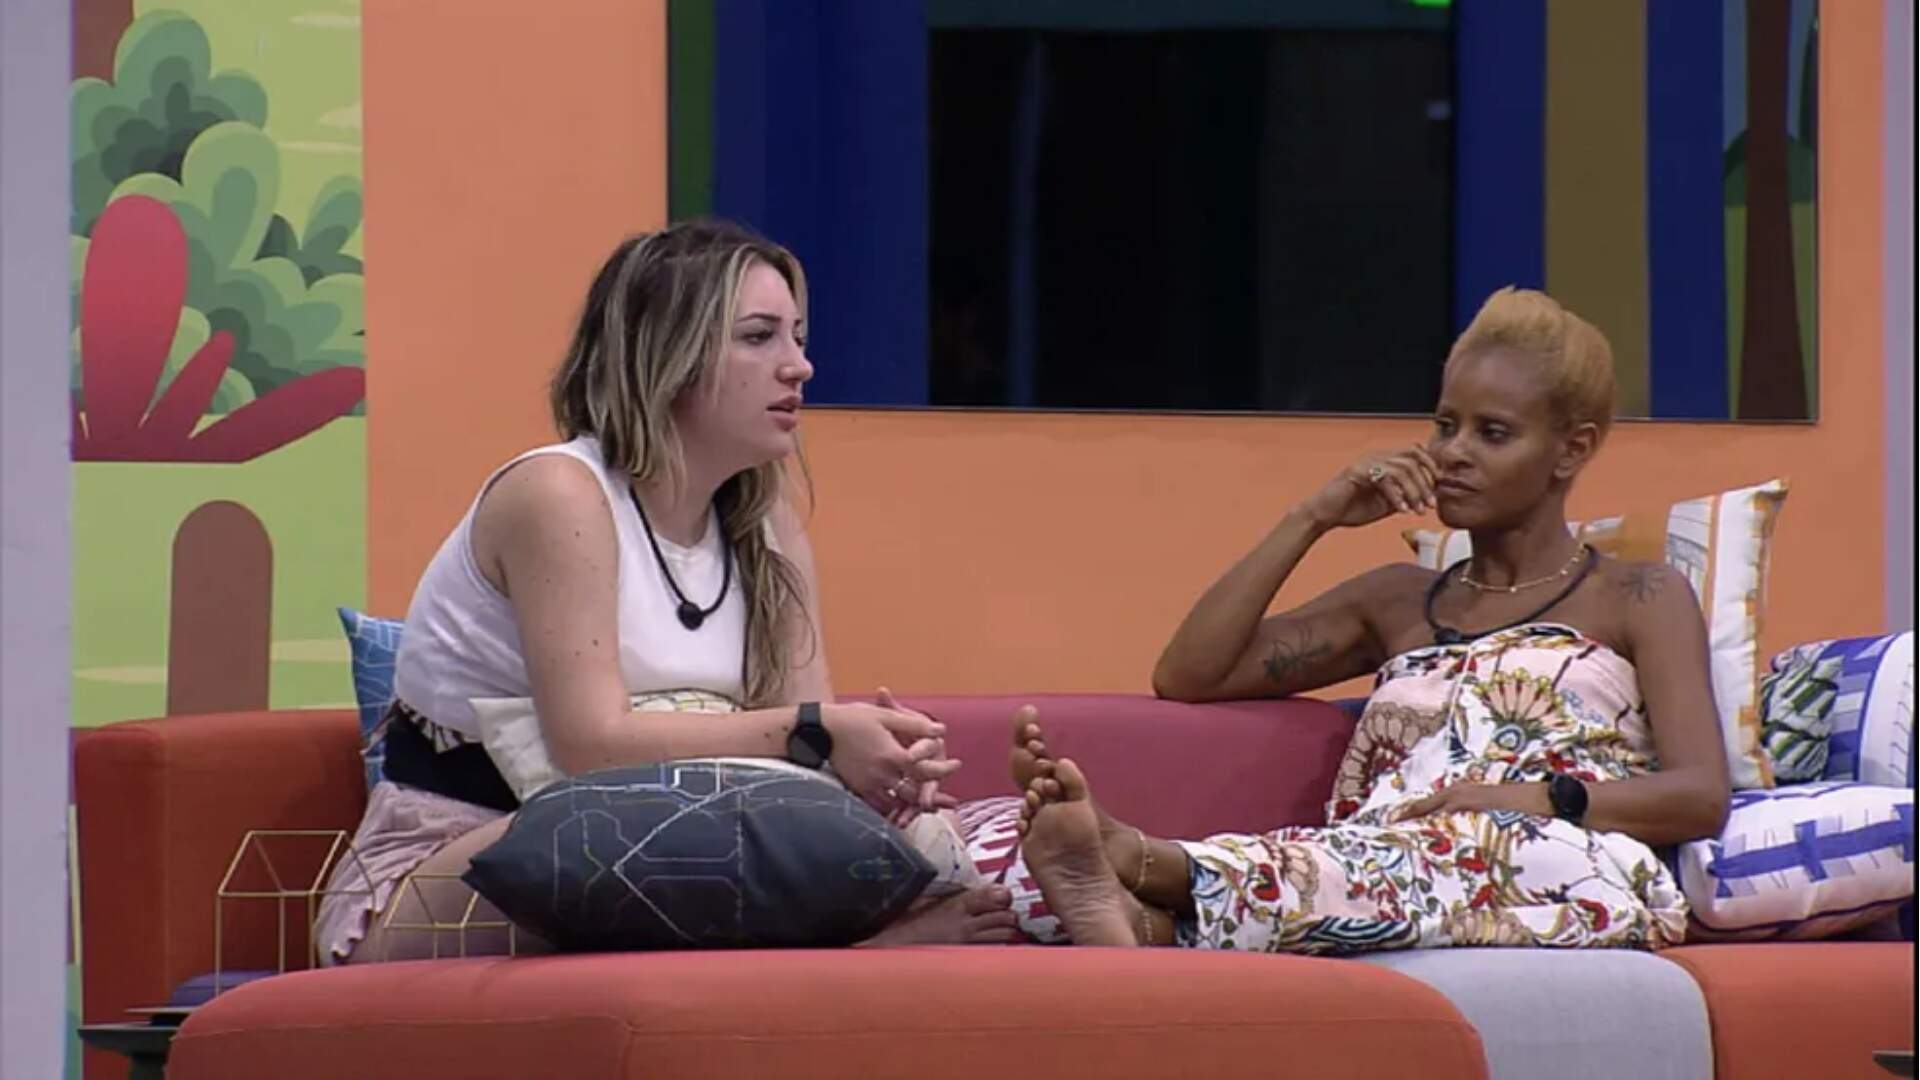 BBB 23: Amanda Meirelles avalia comportamento de Bruna nas relações: “Carente” - Metropolitana FM